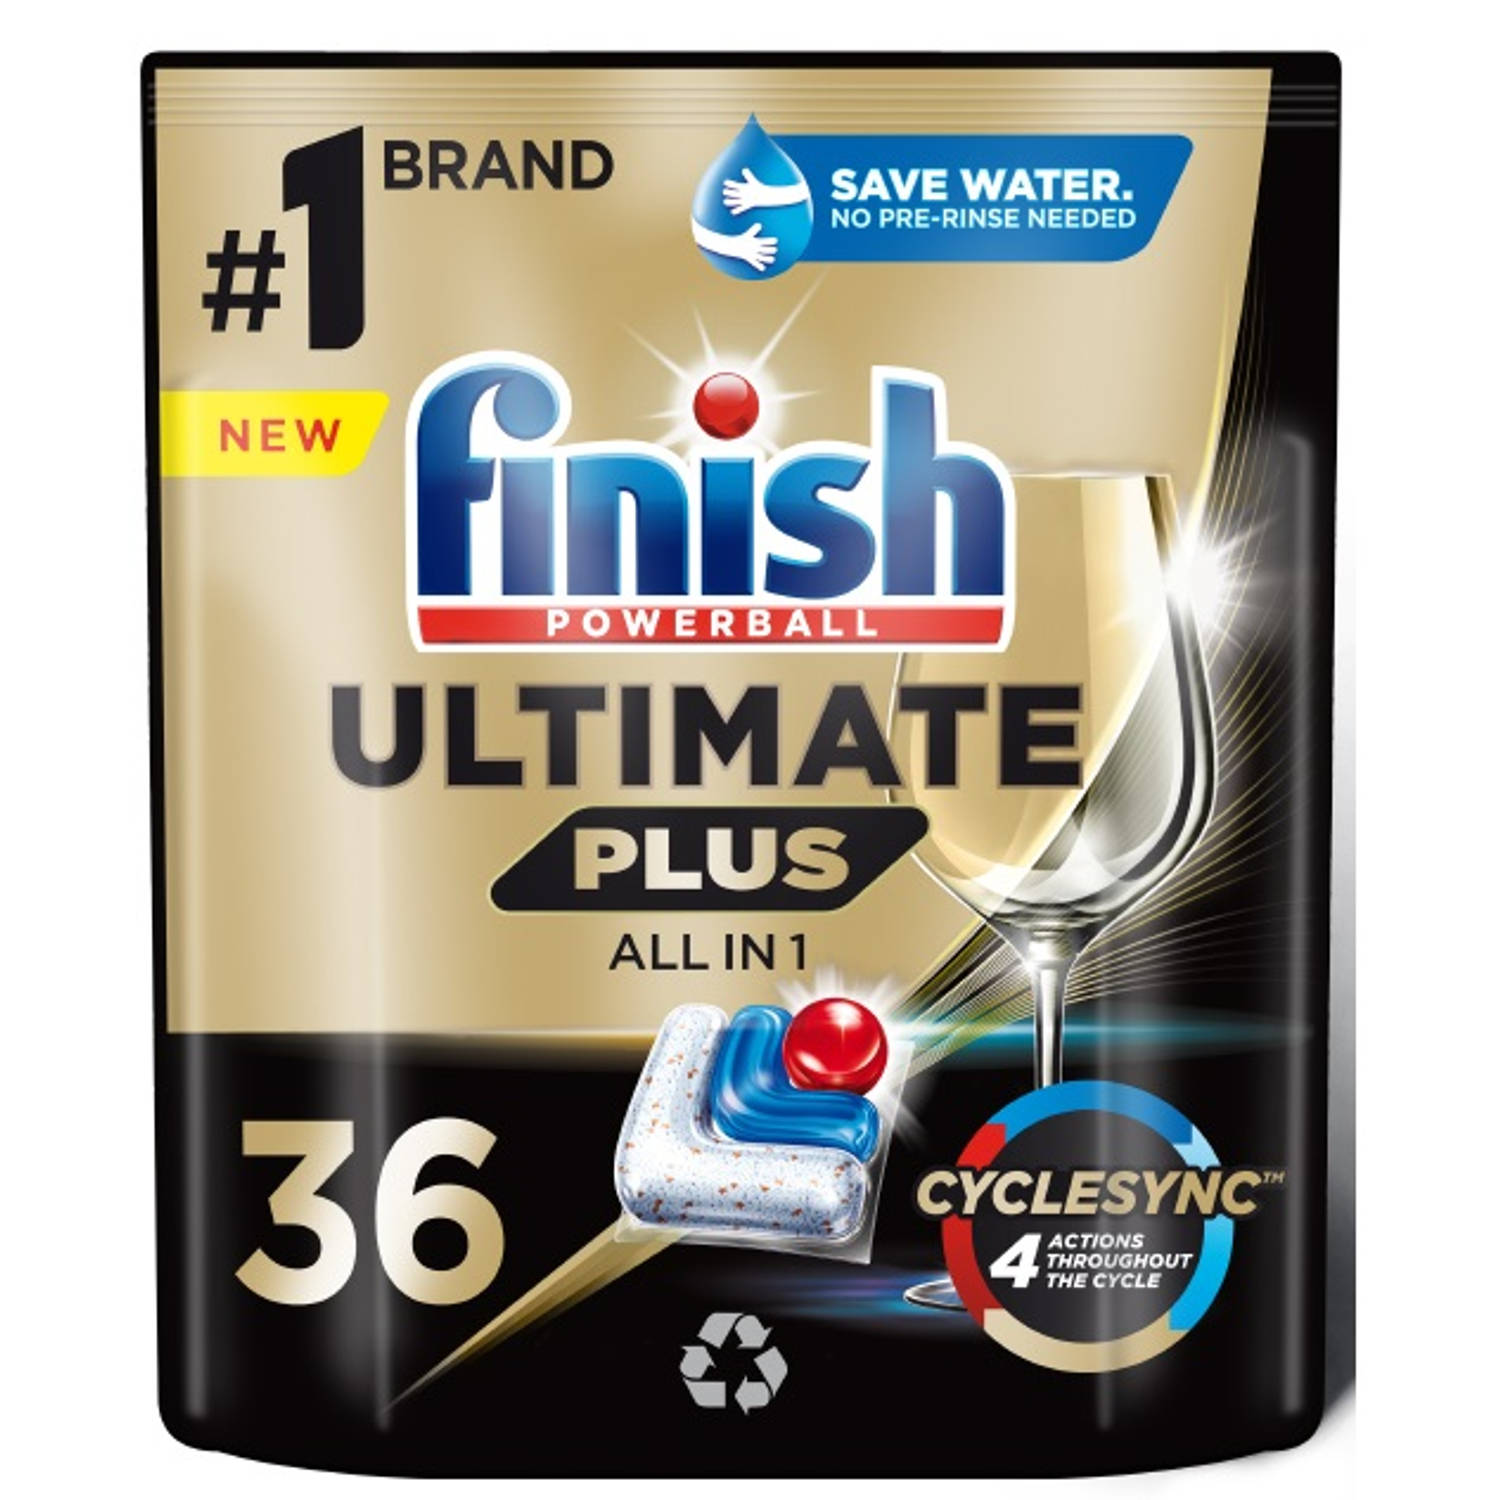 Ultimate Plus Fresh vaatwasmachine capsules 36st